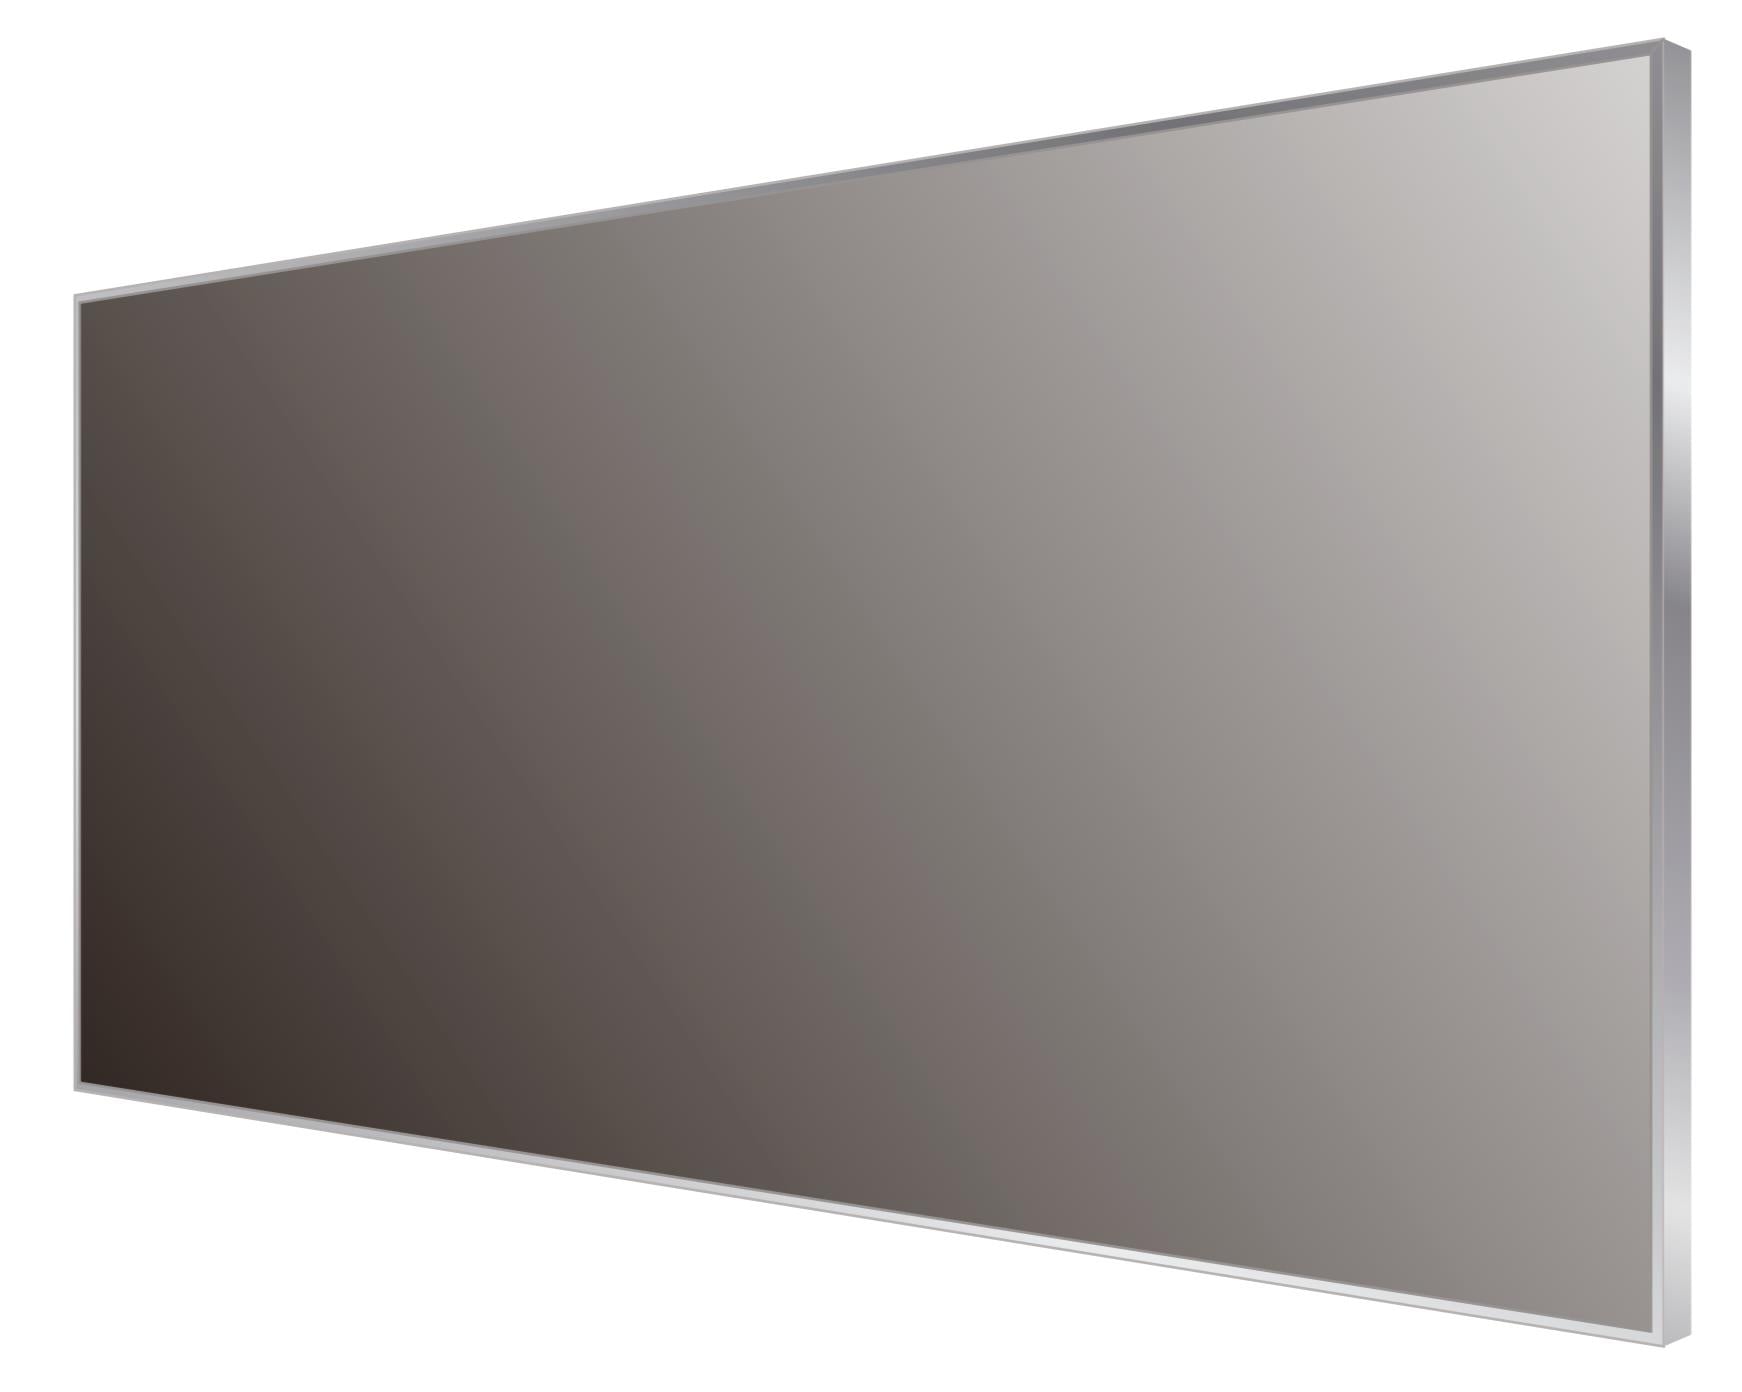 DAX Aluminum Framed Bathroom Vanity Mirror, 59-1/16 x 19-11/16 x 8-1/4 Inches (DAX-AF15050)